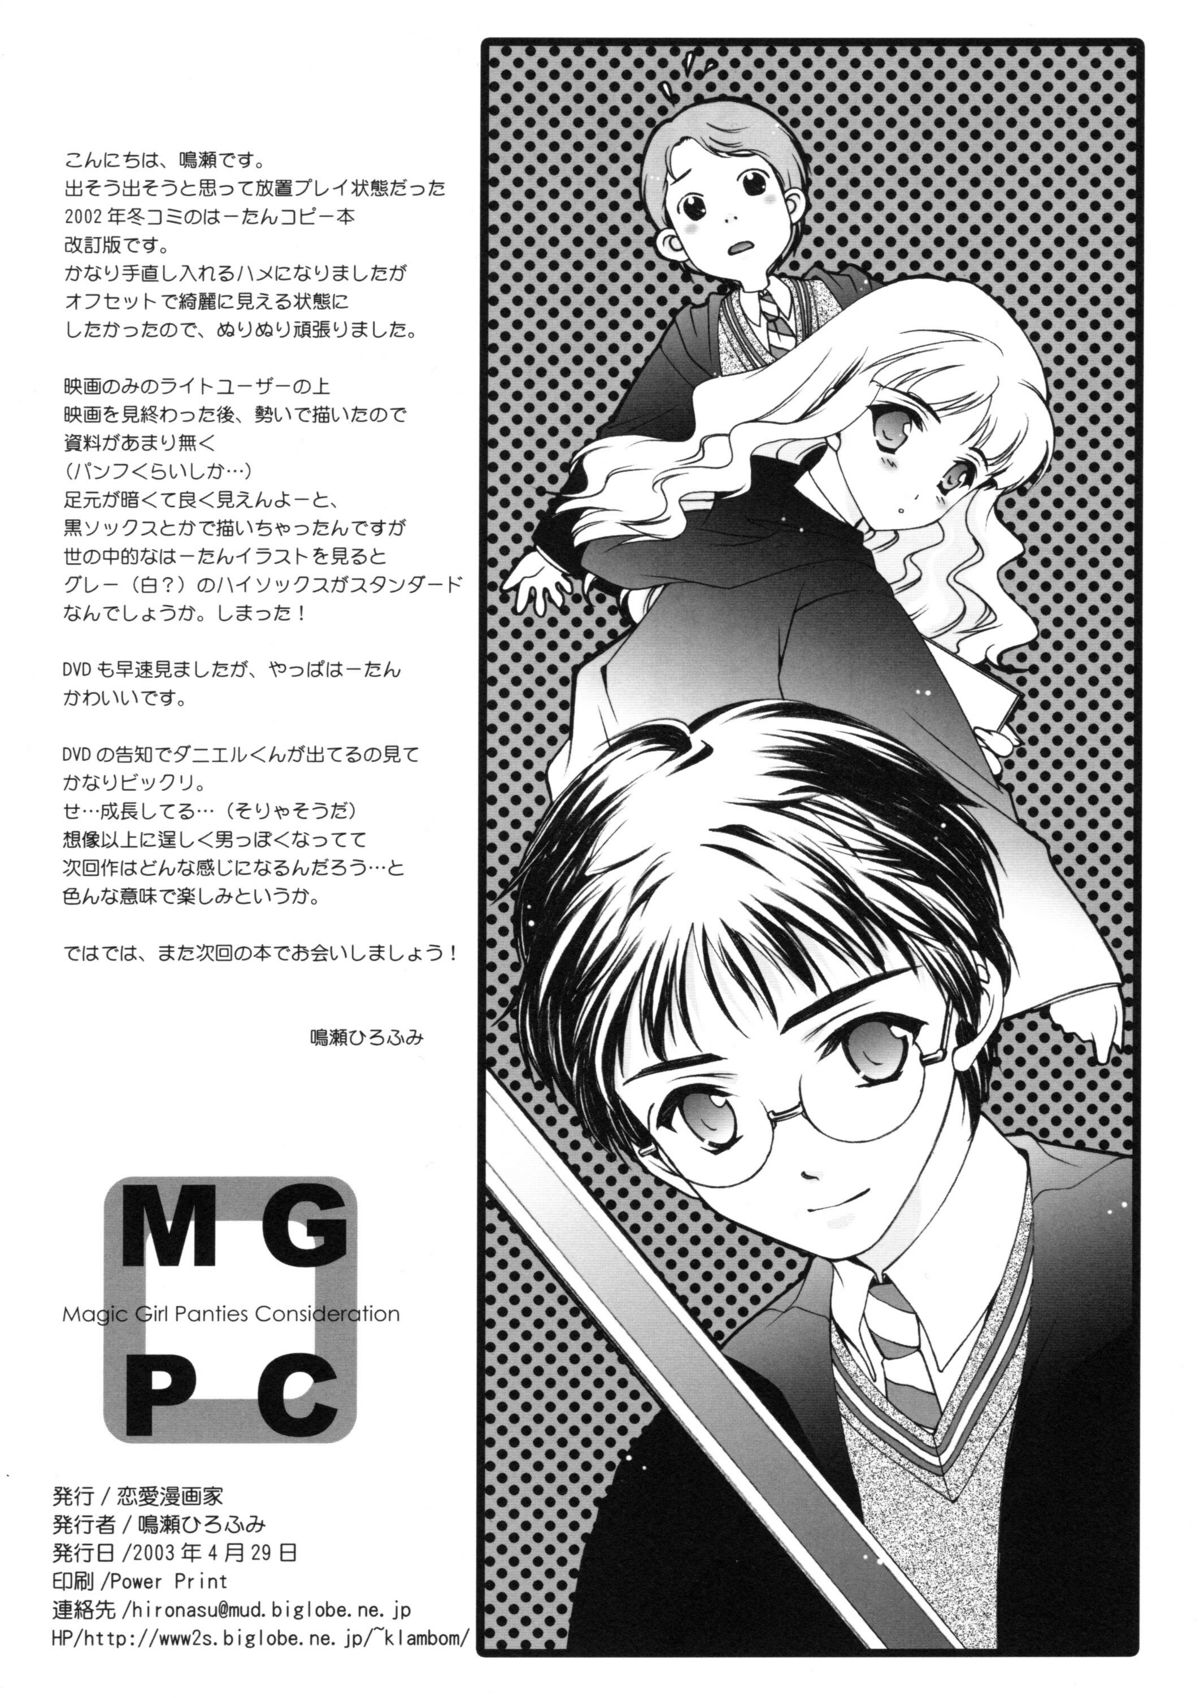 (Cレヴォ33) [恋愛漫画家 (鳴瀬ひろふみ)] MGPC (ハリーポッター)